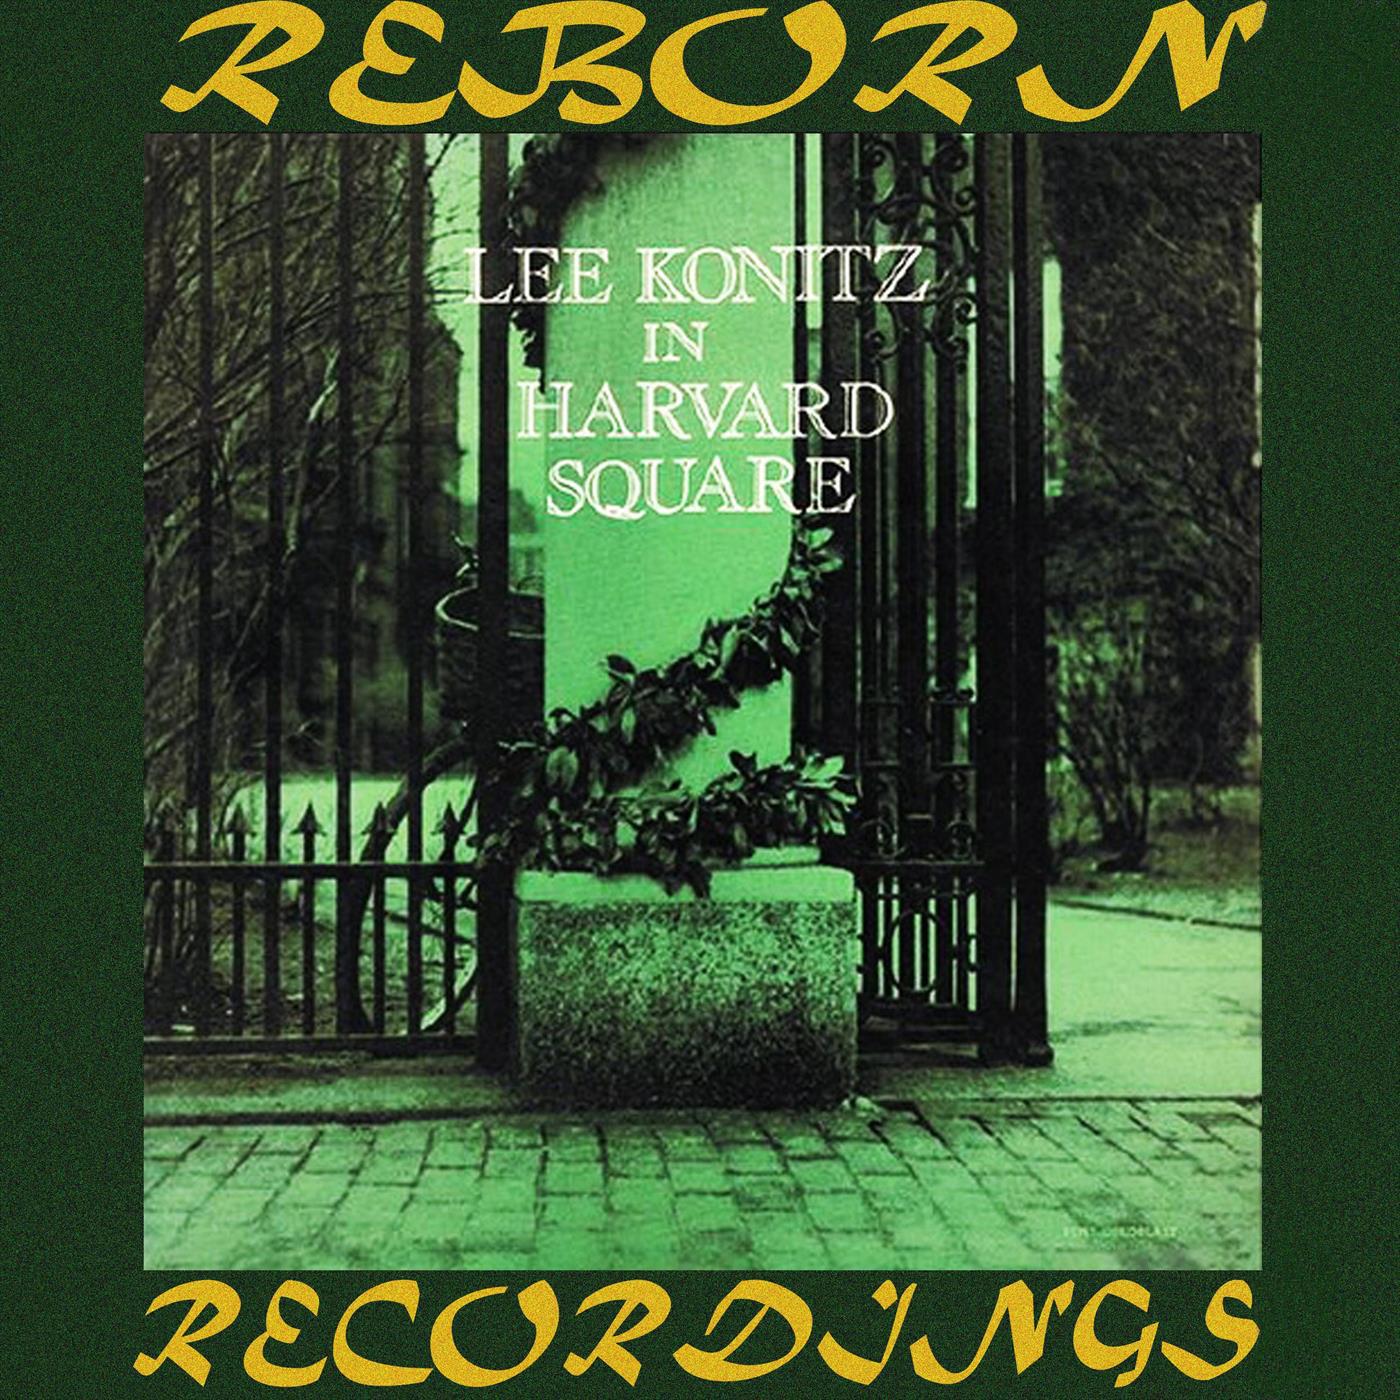 Lee Konitz at Harvard Square (HD Remastered)